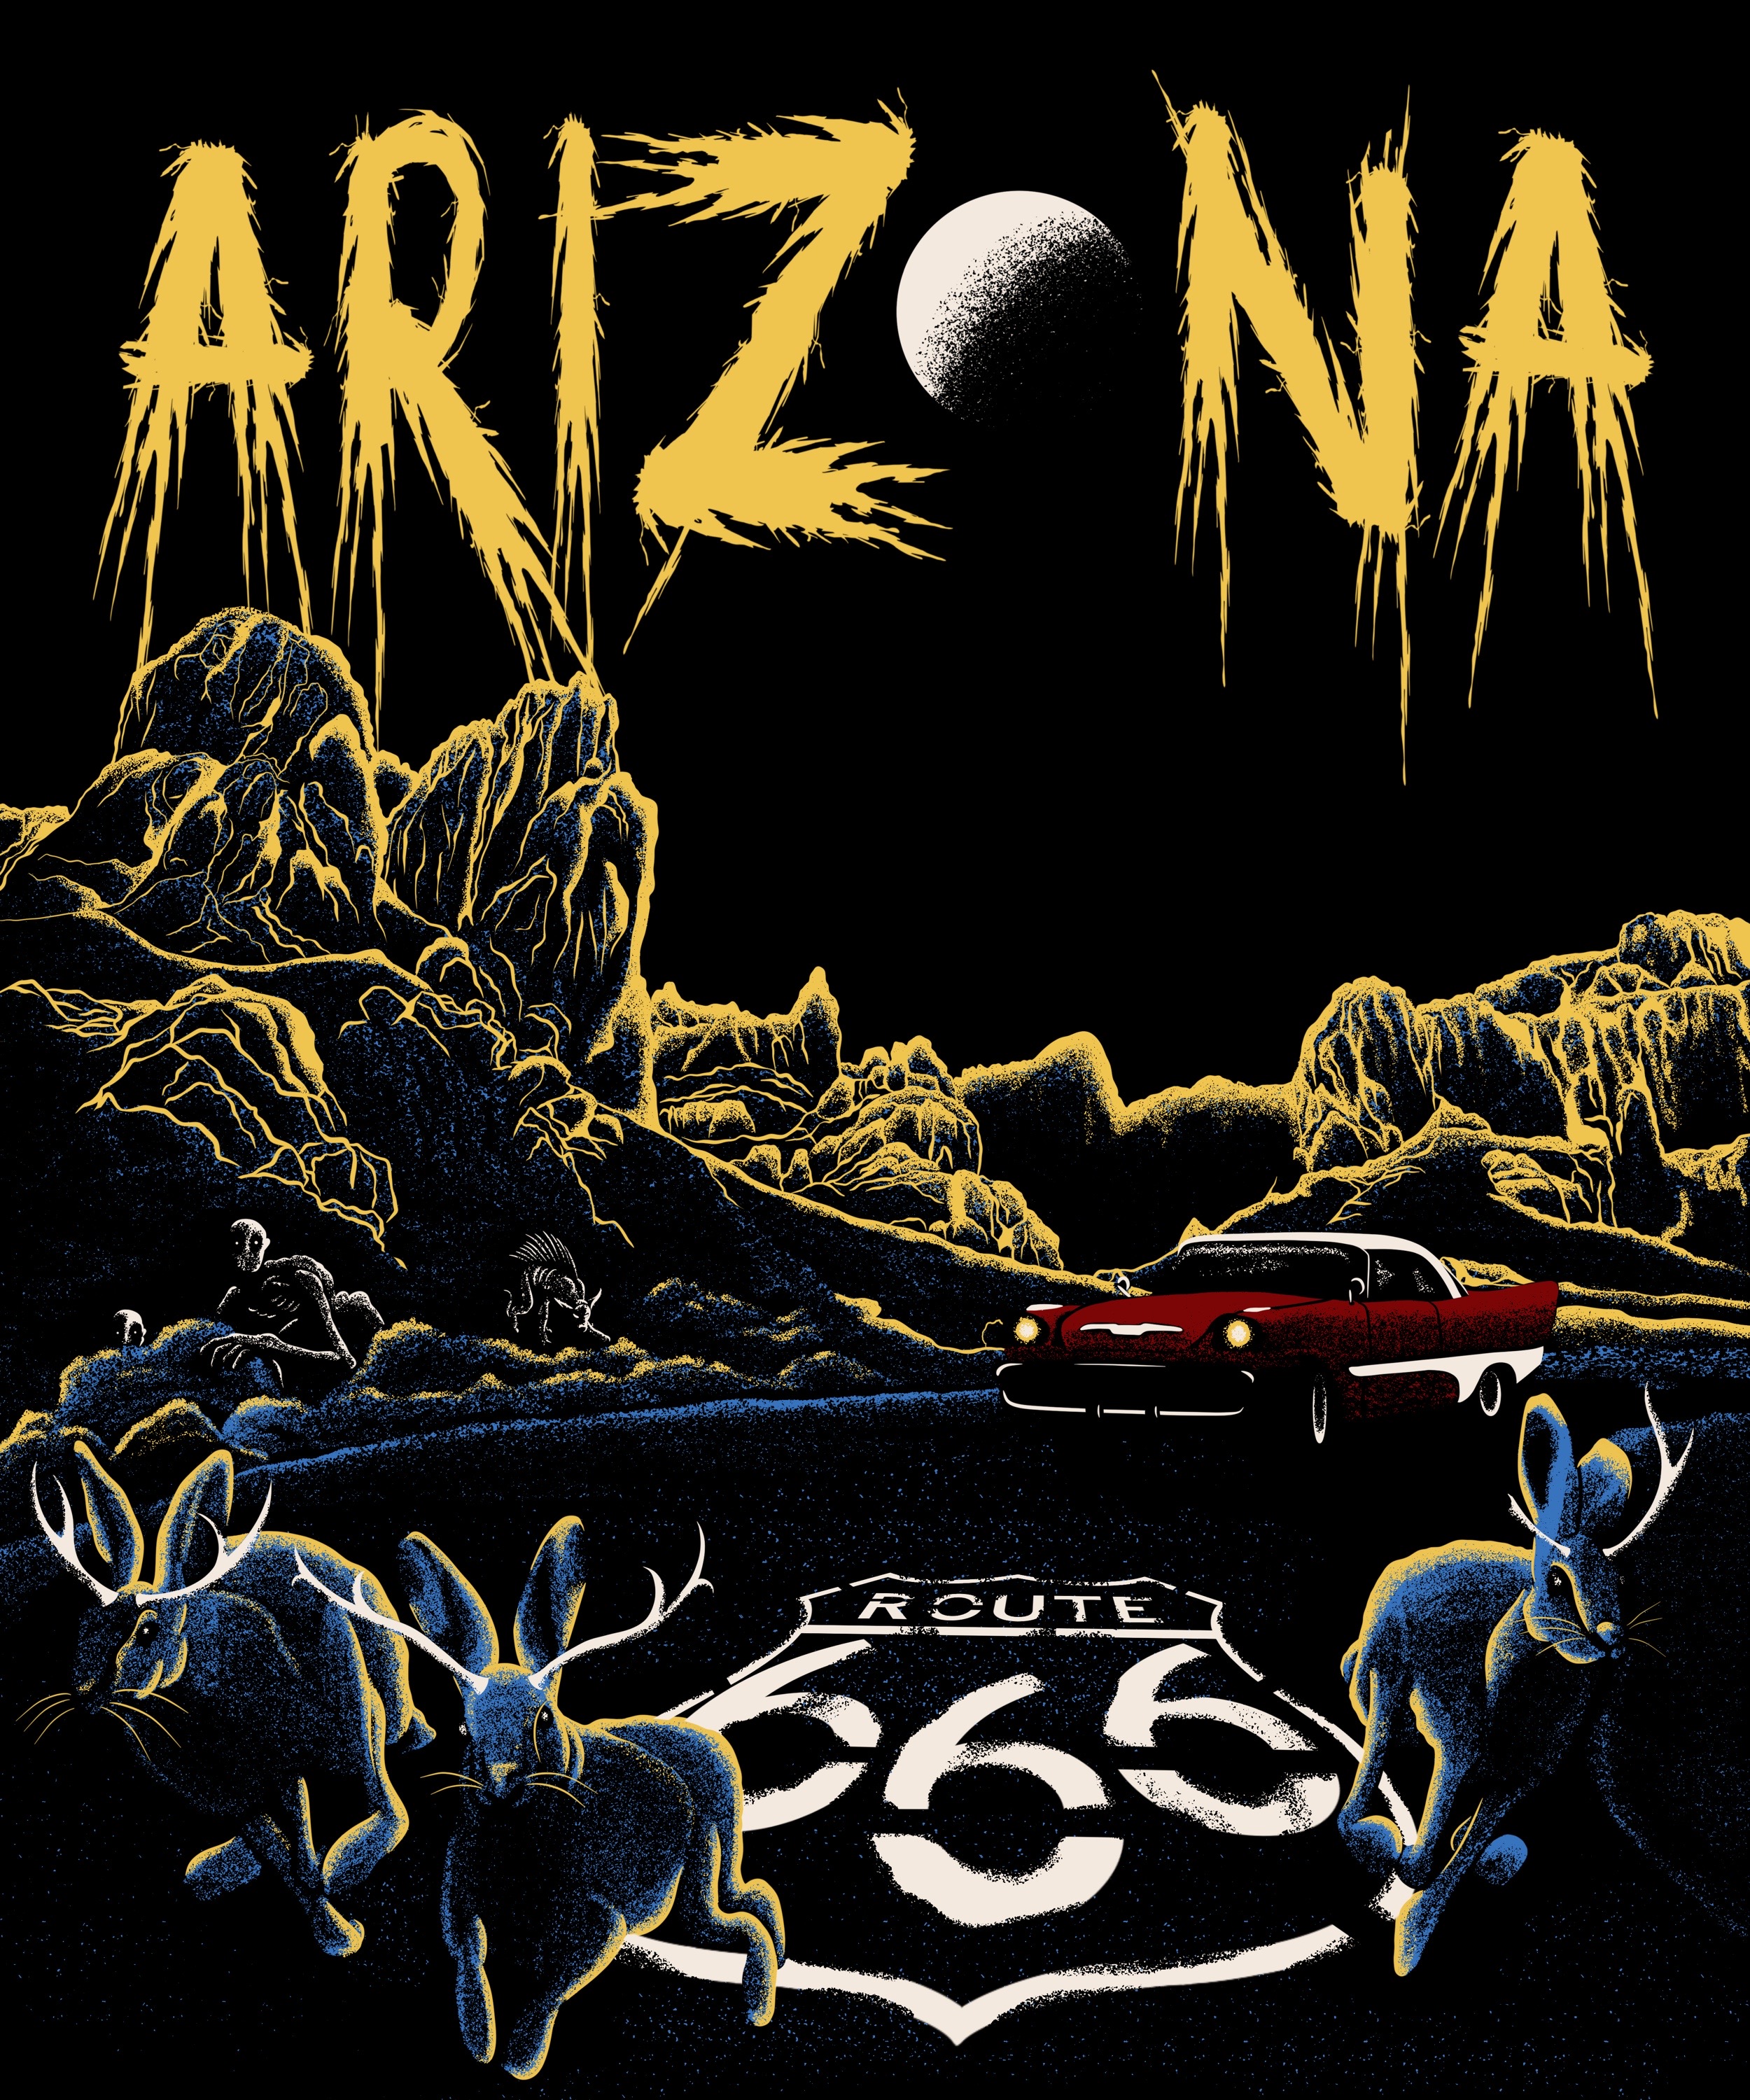 Route 666 travels through Arizona